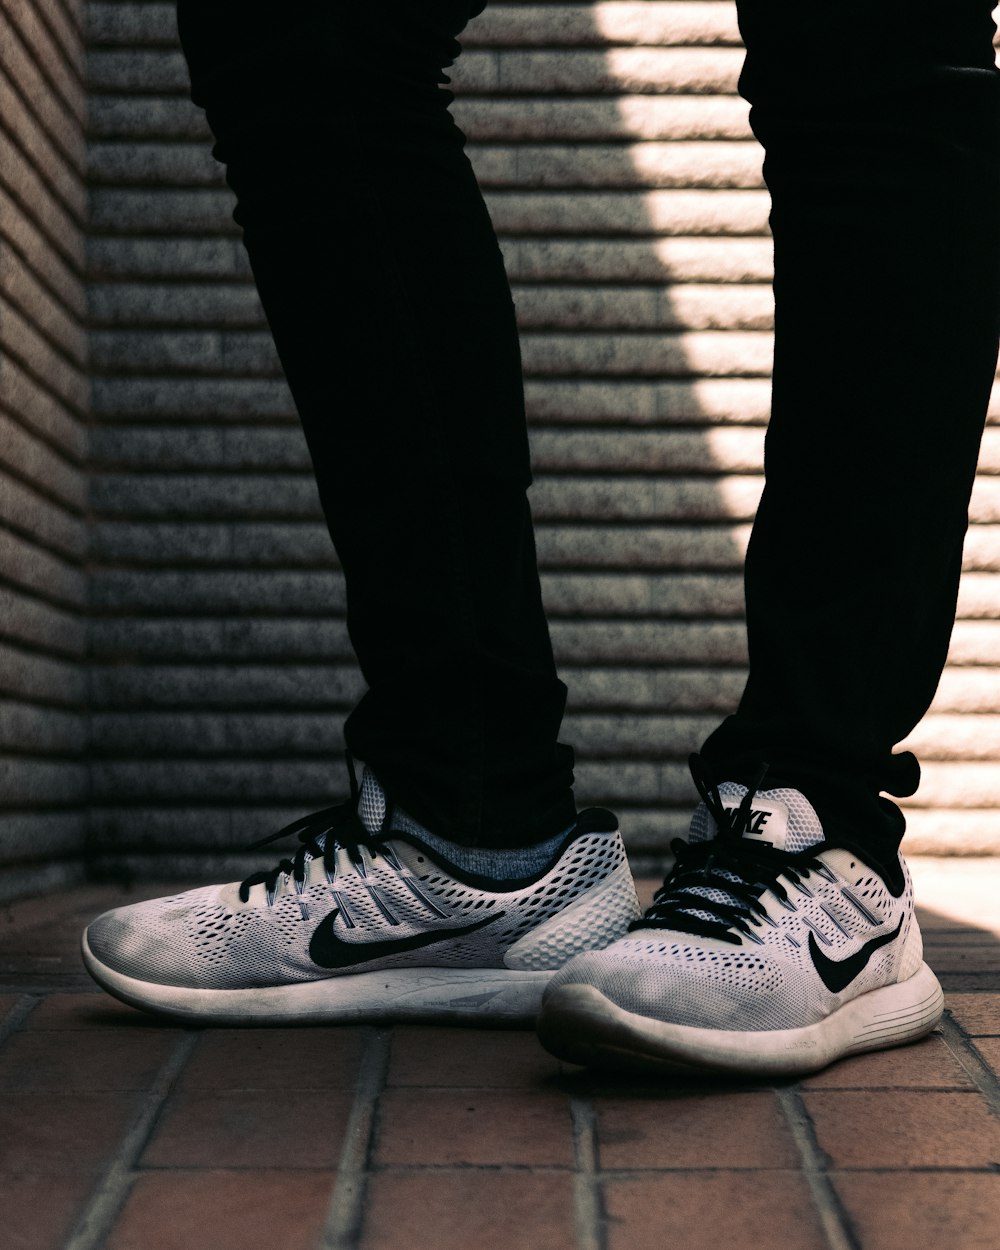 Foto Par de zapatillas Nike grises y negras – Imagen Nueva York gratis en  Unsplash